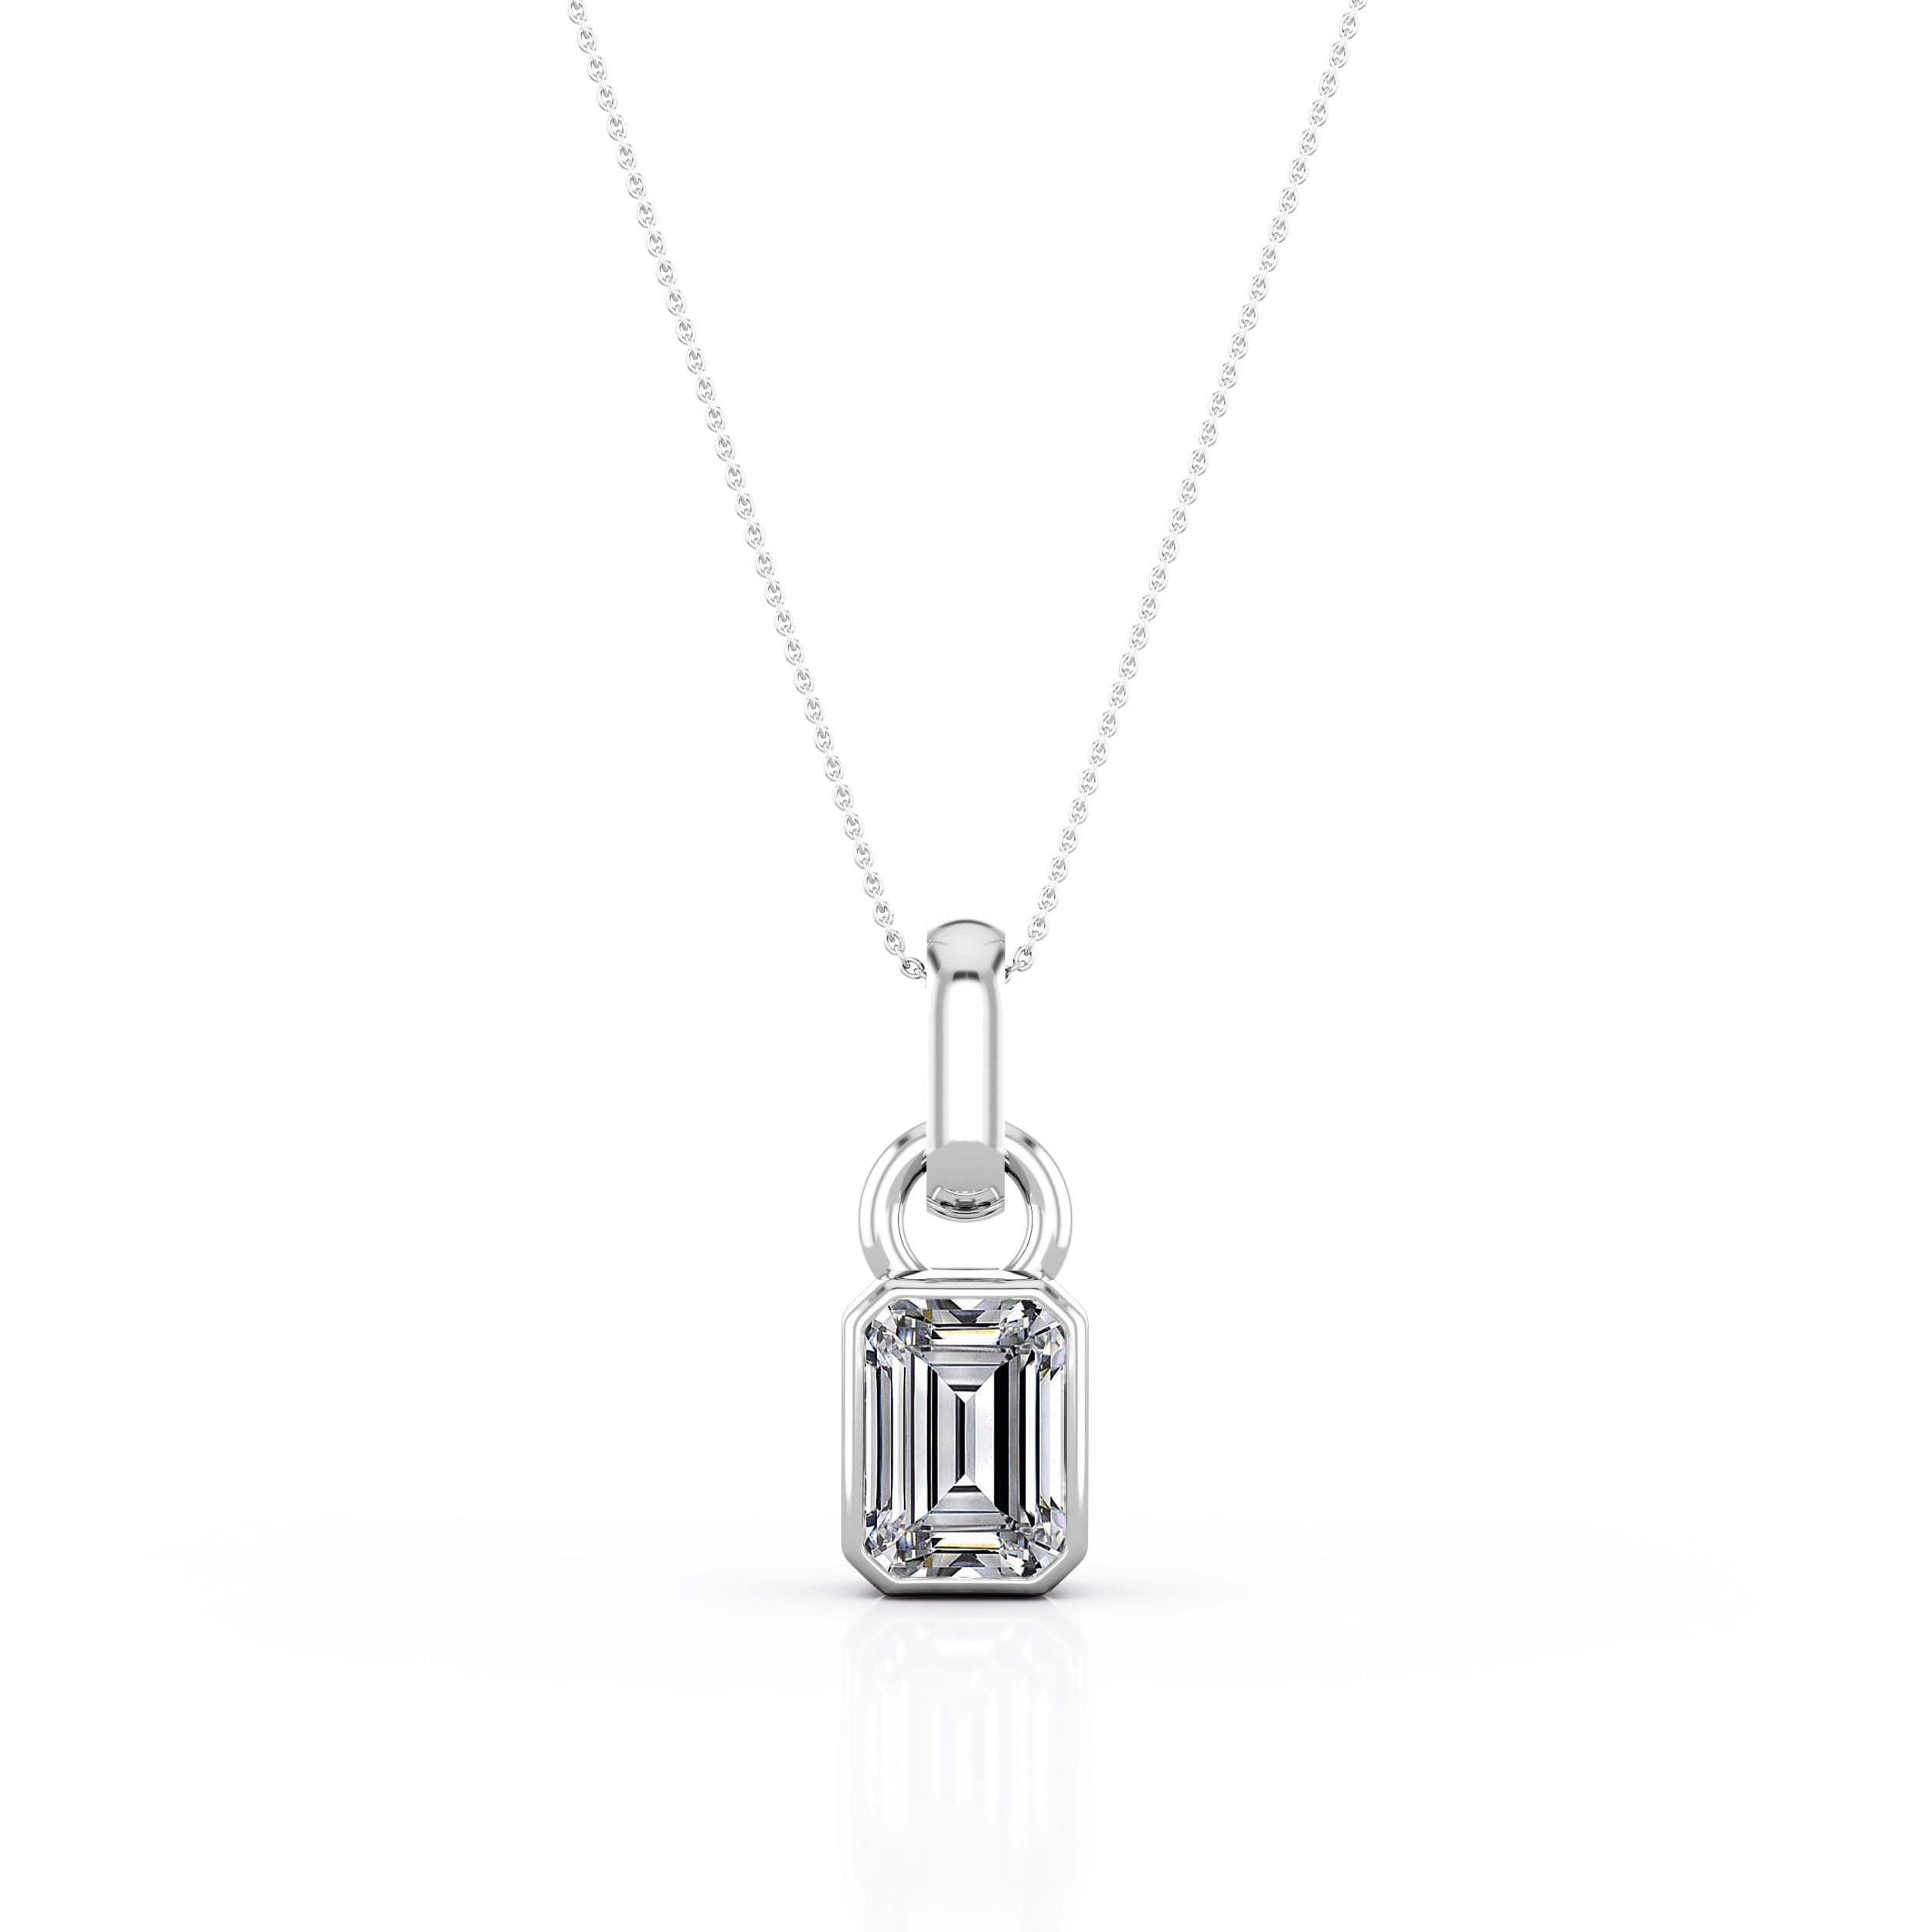 Mother’s Day D/VVS1 Asscher Cut Diamond Solitaire Pendant Necklace Slide Chain